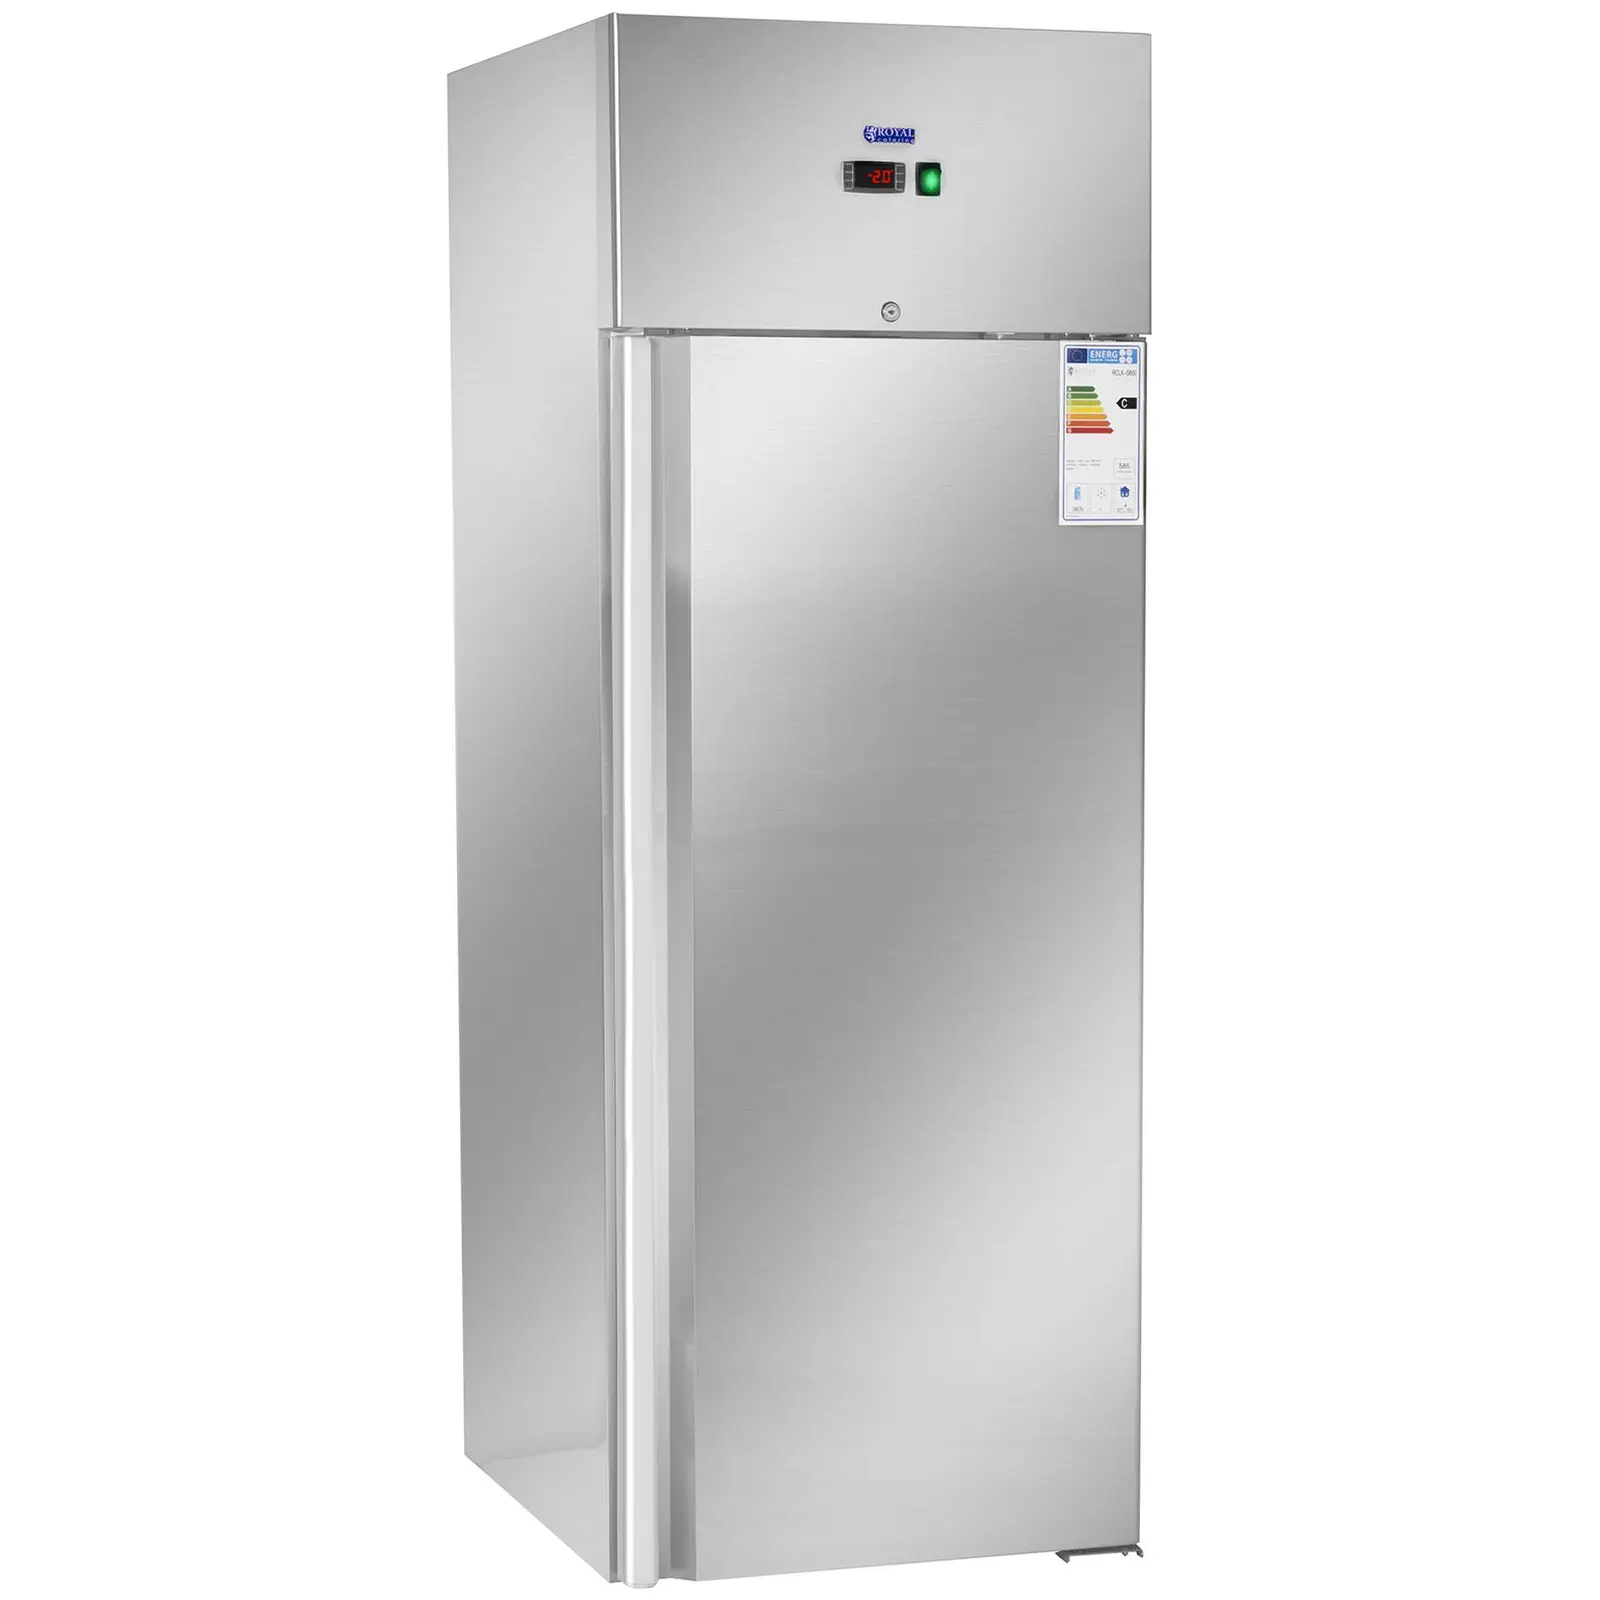 Vendéglátóipari hűtőszekrény - 540 l - rozsdamentes acél